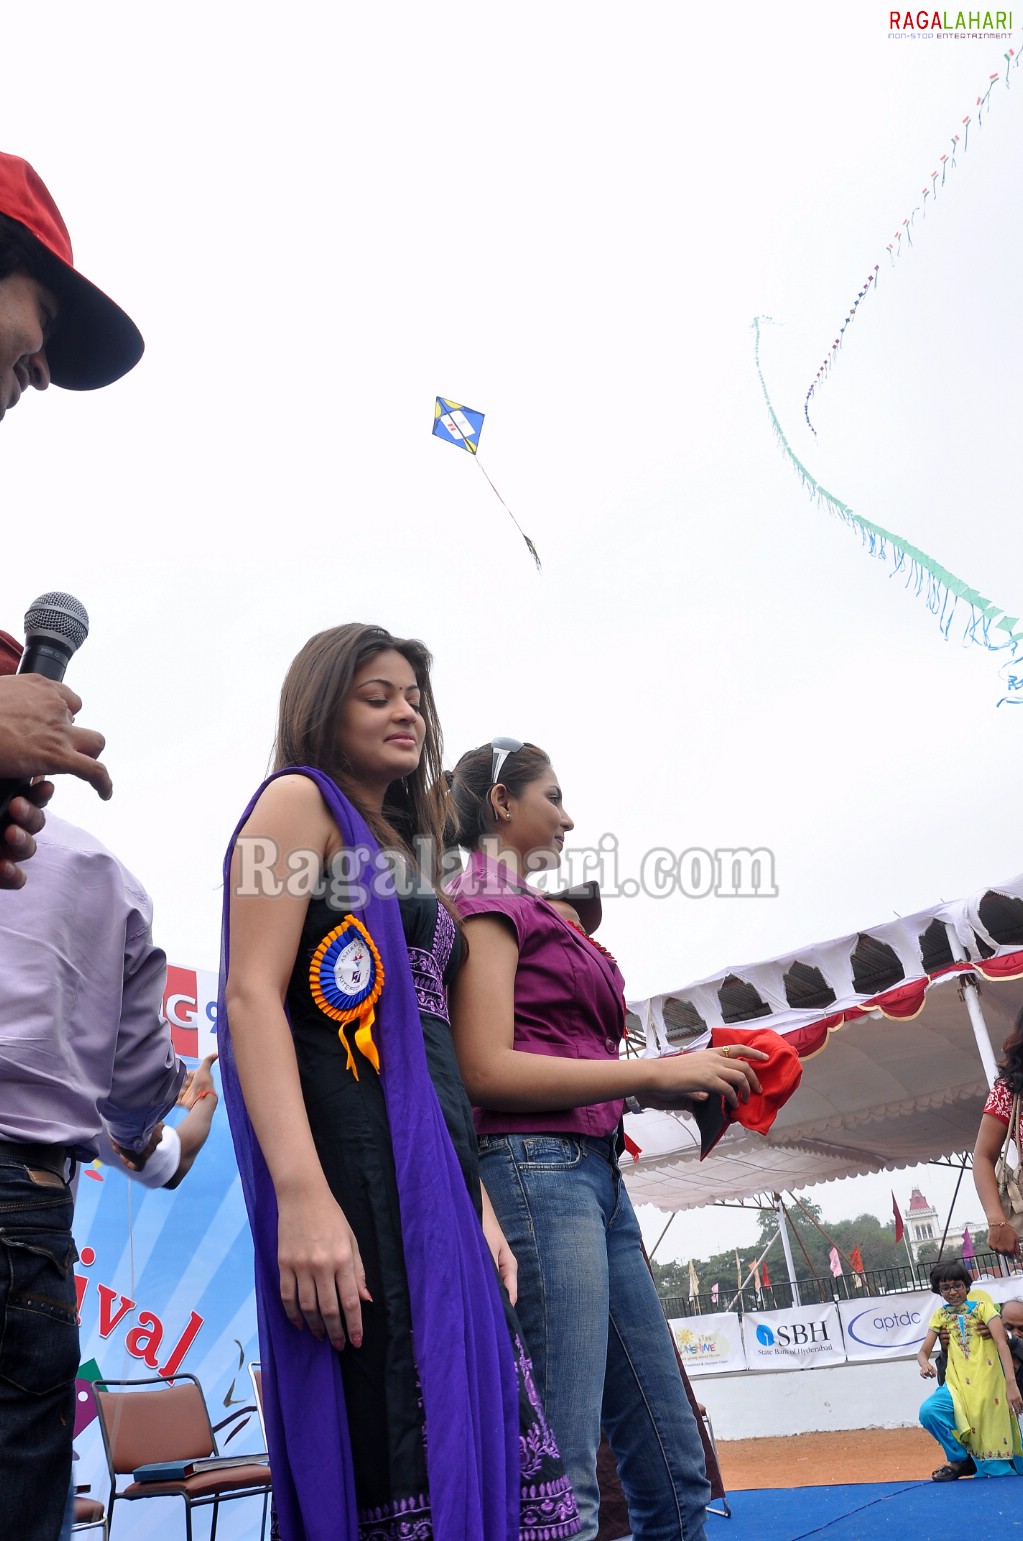 Madhu Shalini & Sneha Ullal at Ashray-Akruti Kite Festival